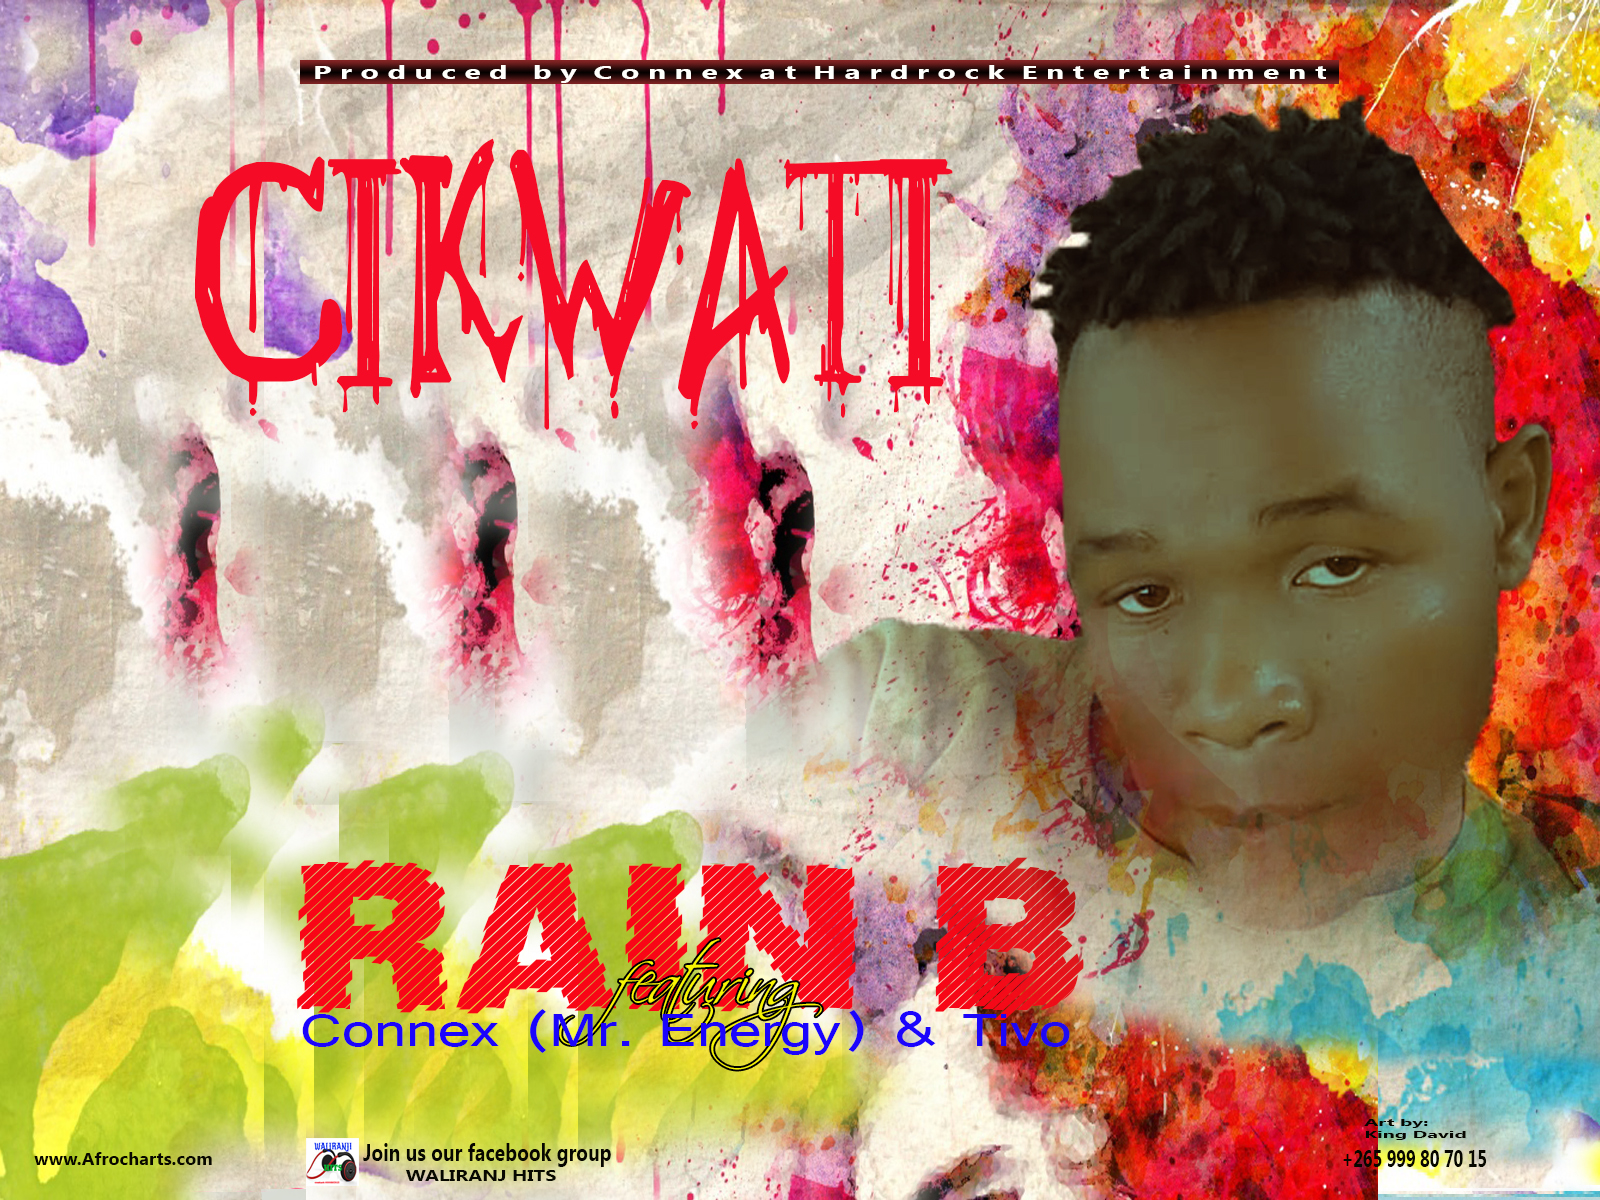 Cikwati -  Rain B (Ft  Connex & Tivo